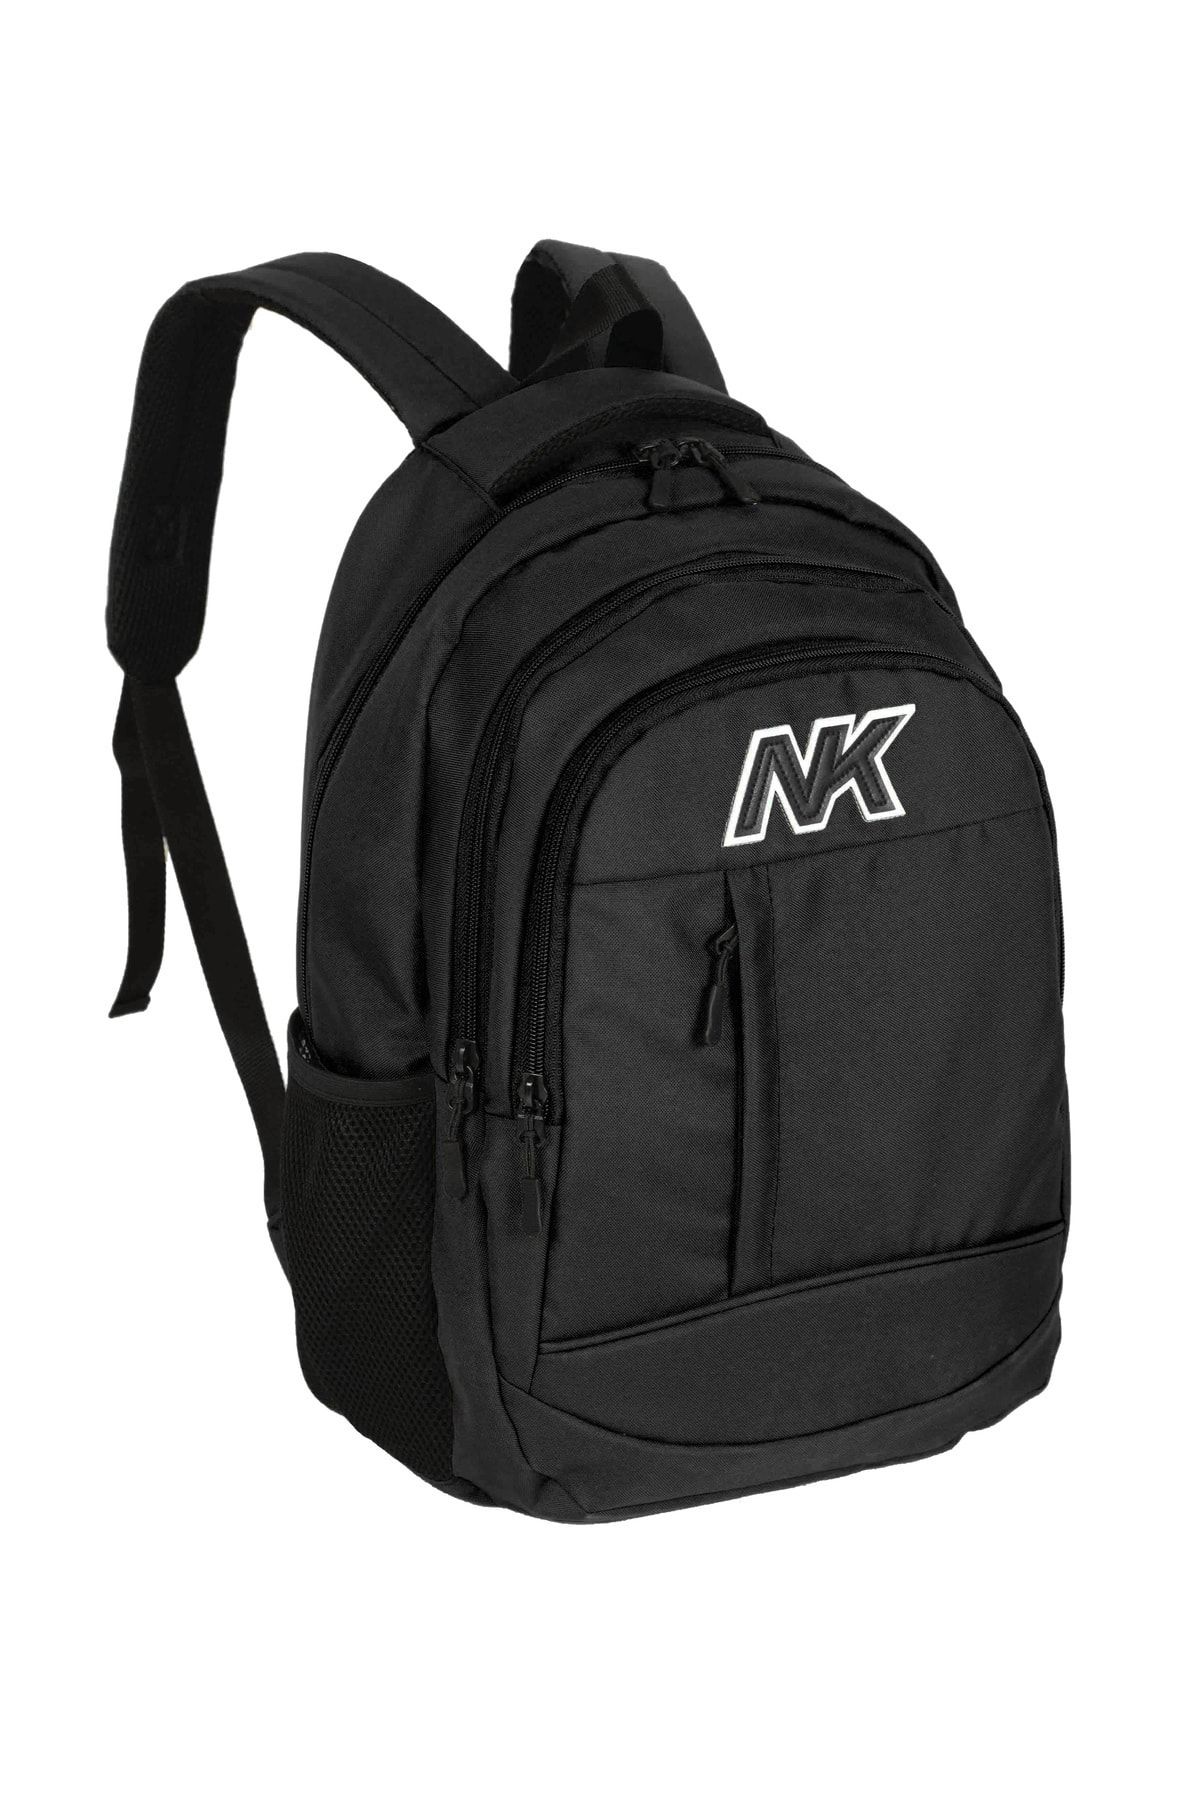 Miracle NK-9001 seyahat ve okul çantası siyah sırt çantası